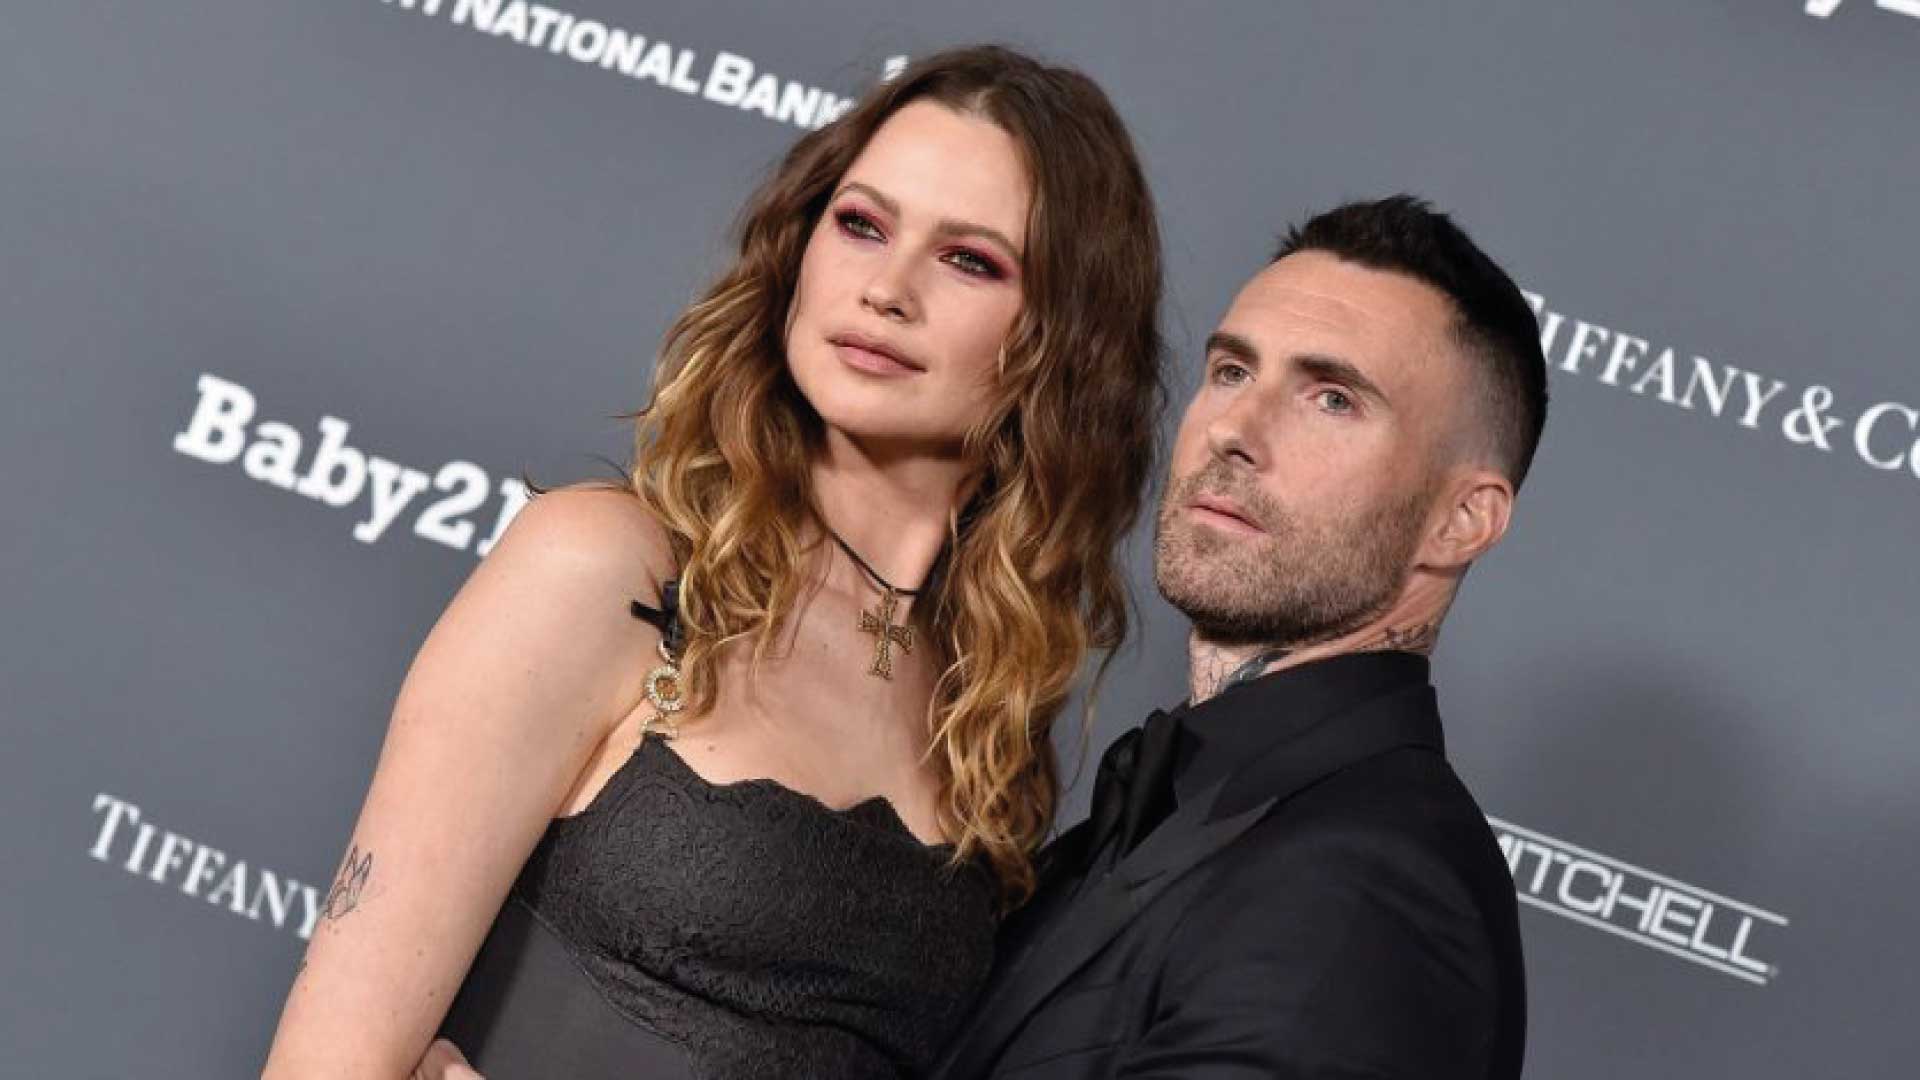 Adam Levine, la voz de Maroon 5 le fue infiel a su esposa embarazada